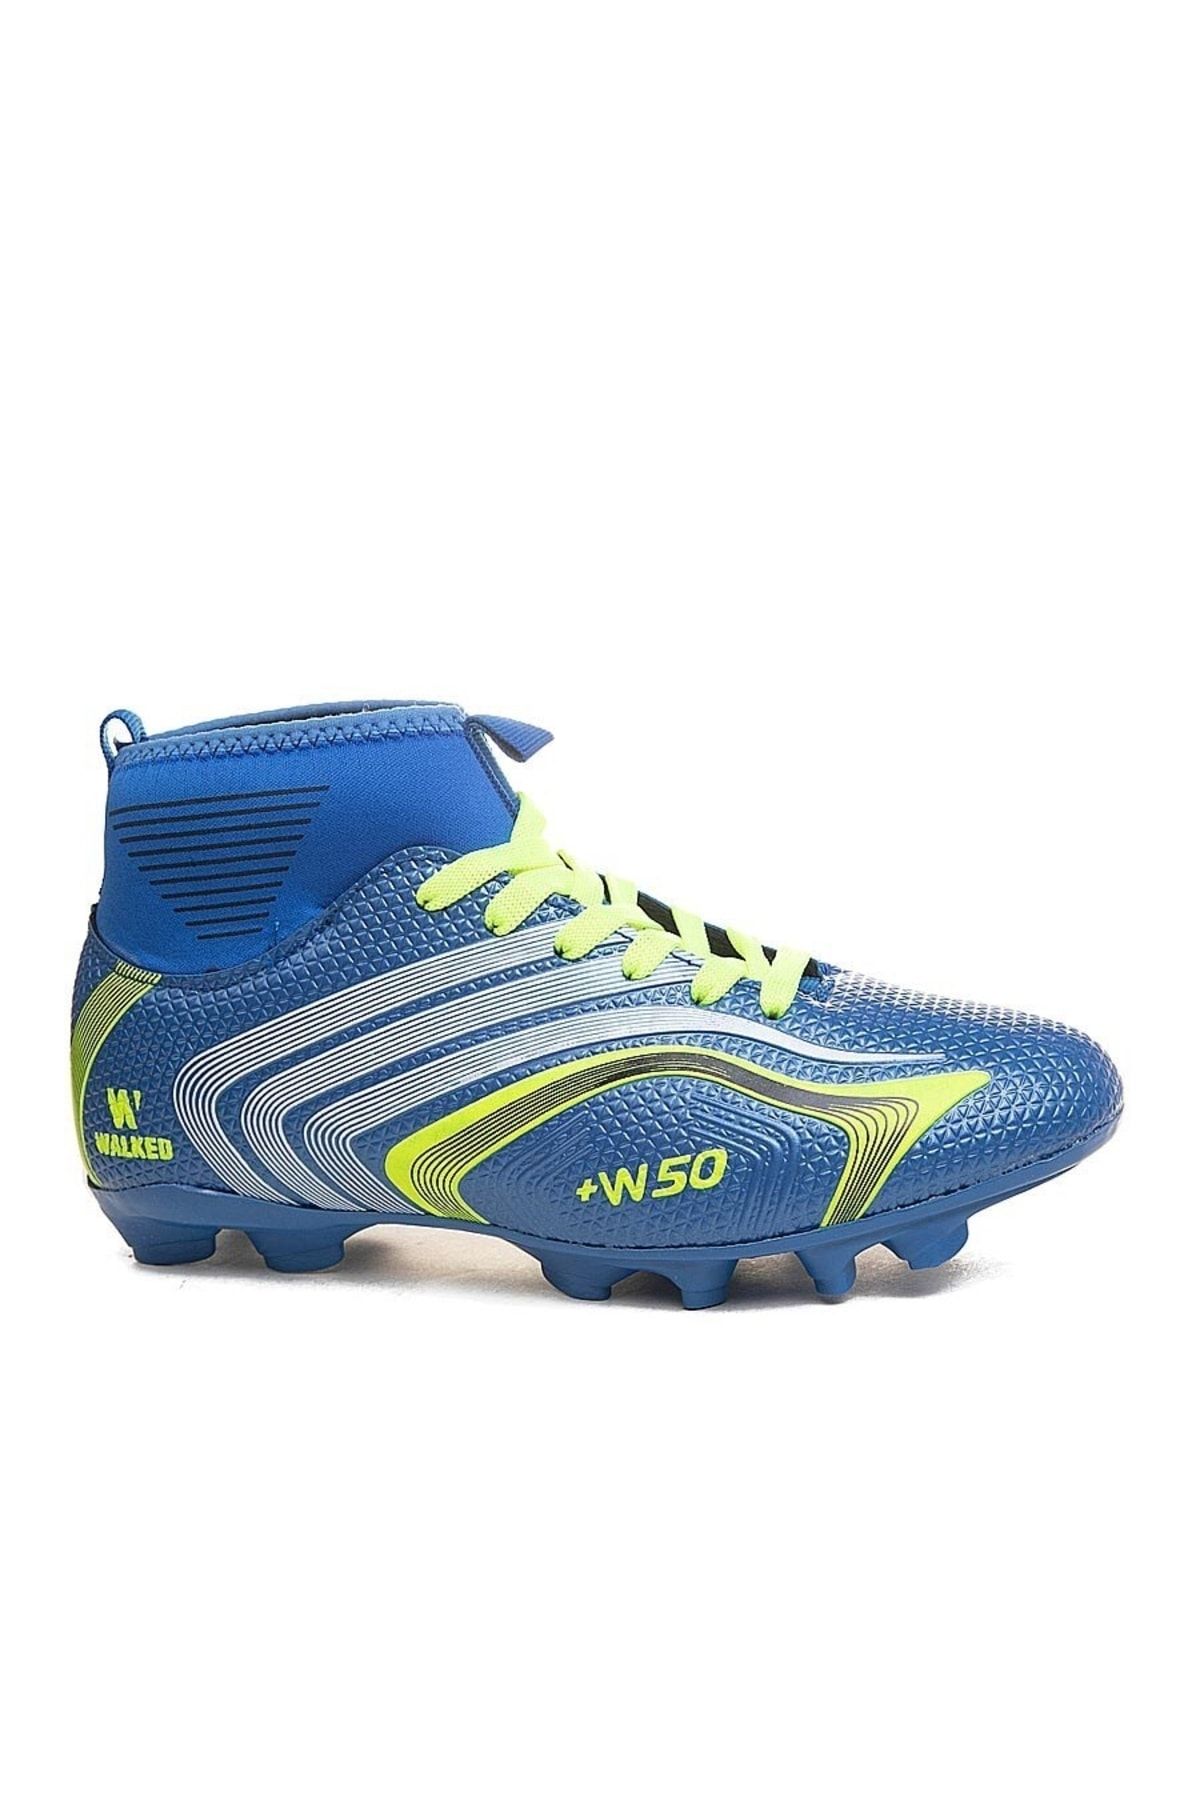 Lion Super Mercury Bilekli Çoraplı Halısaha Çim Dişli Krampon Futbol Ayakkabısı 435 Mavi Sarı